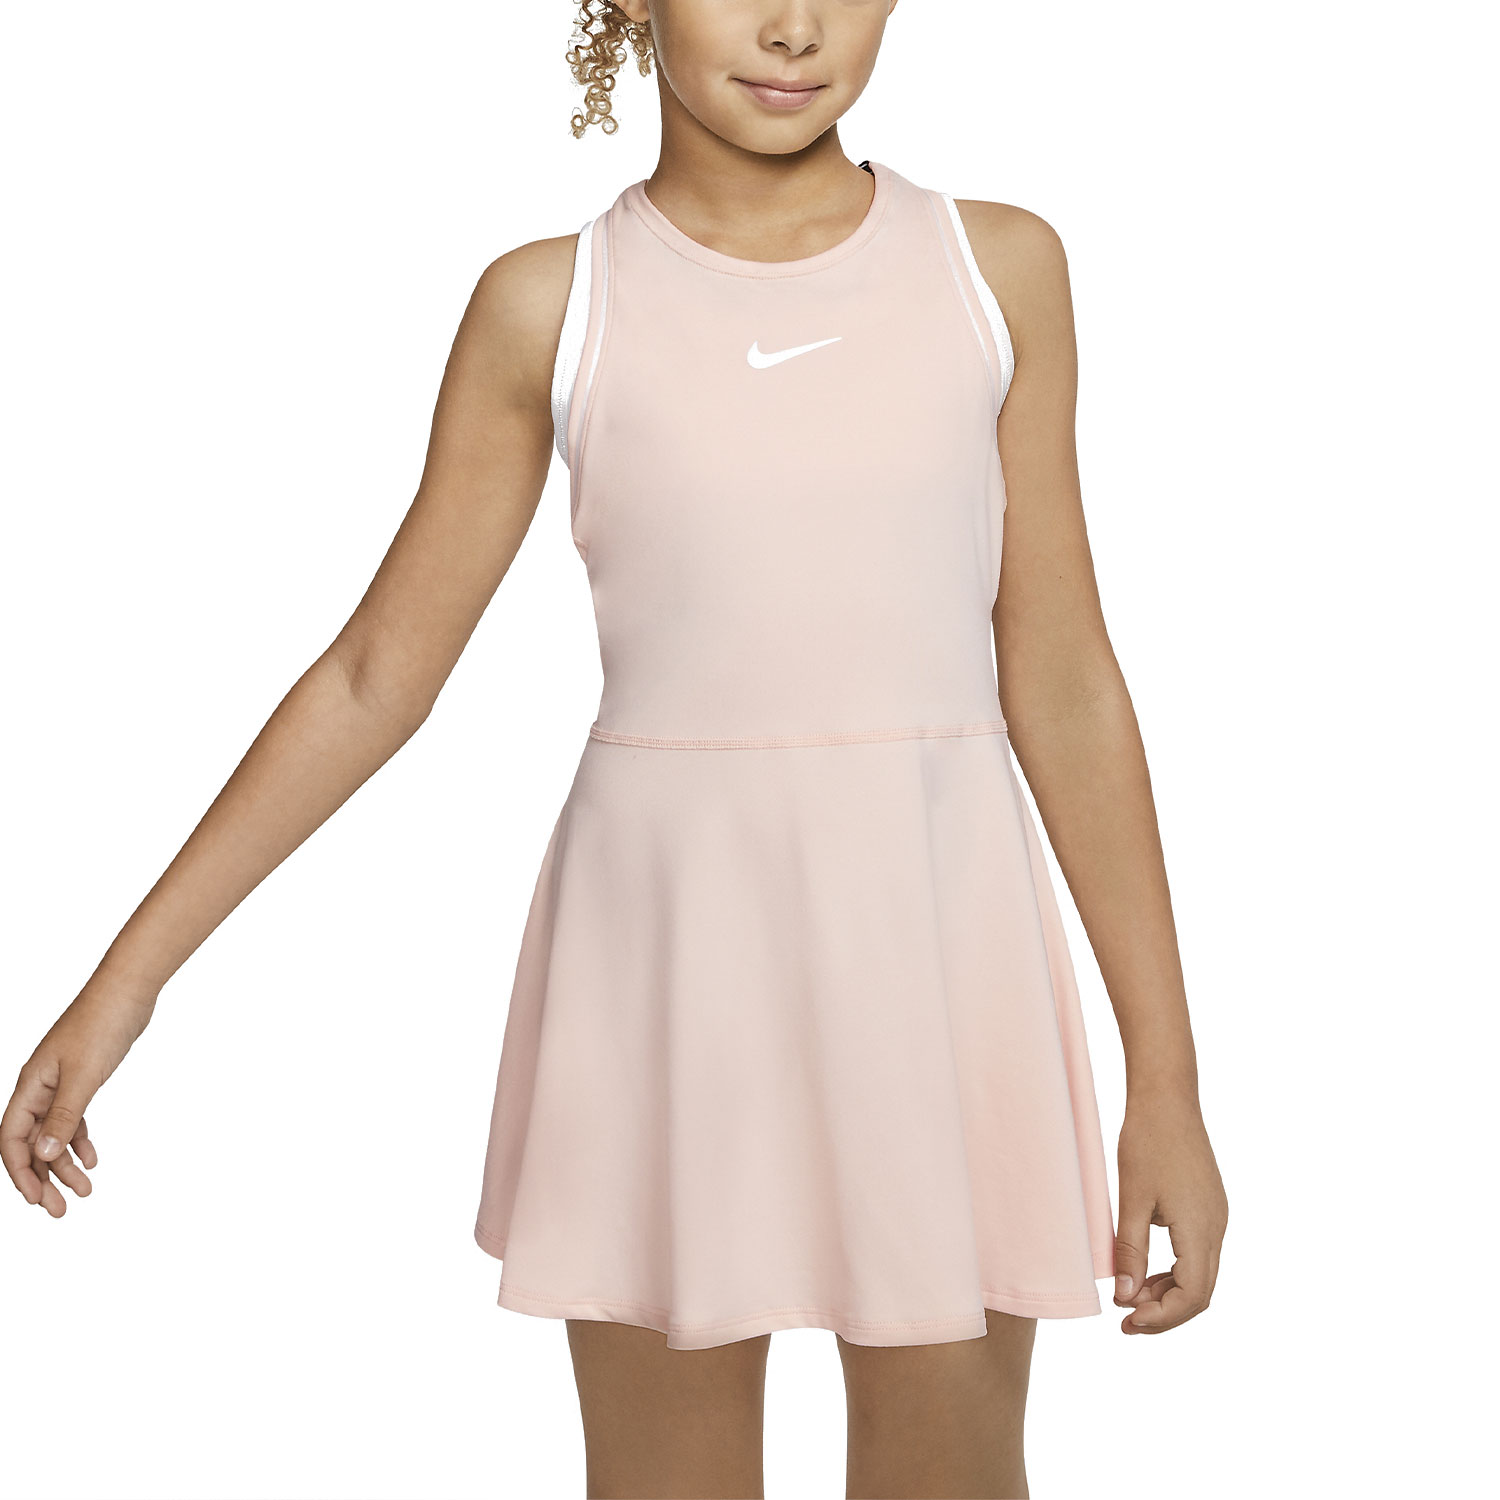 Nike Dry Vestito da Tennis Bambina - Washed Coral/White